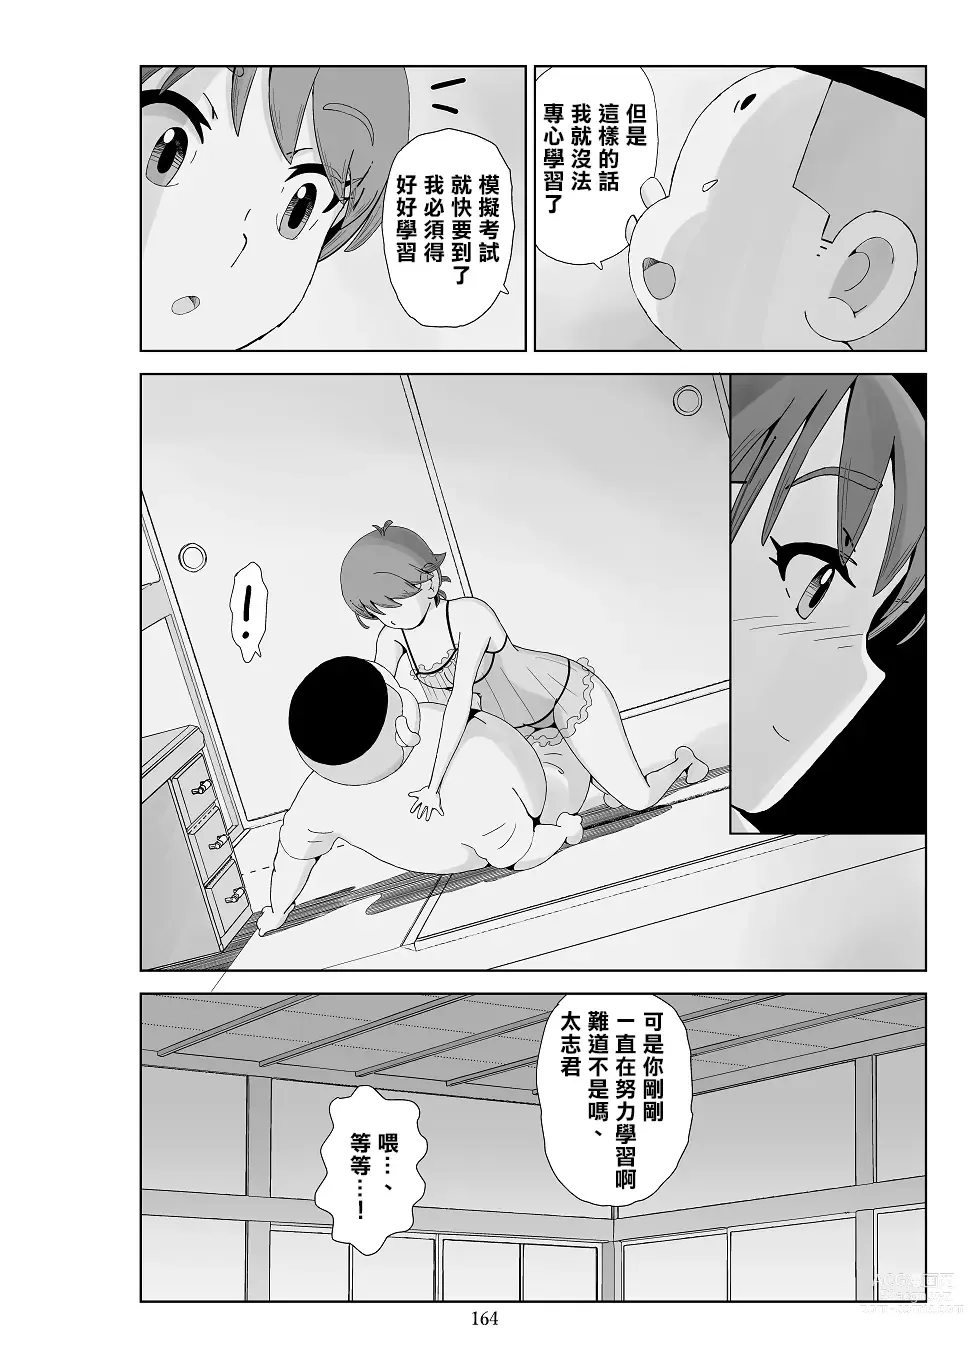 Page 166 of doujinshi Futoshi 3